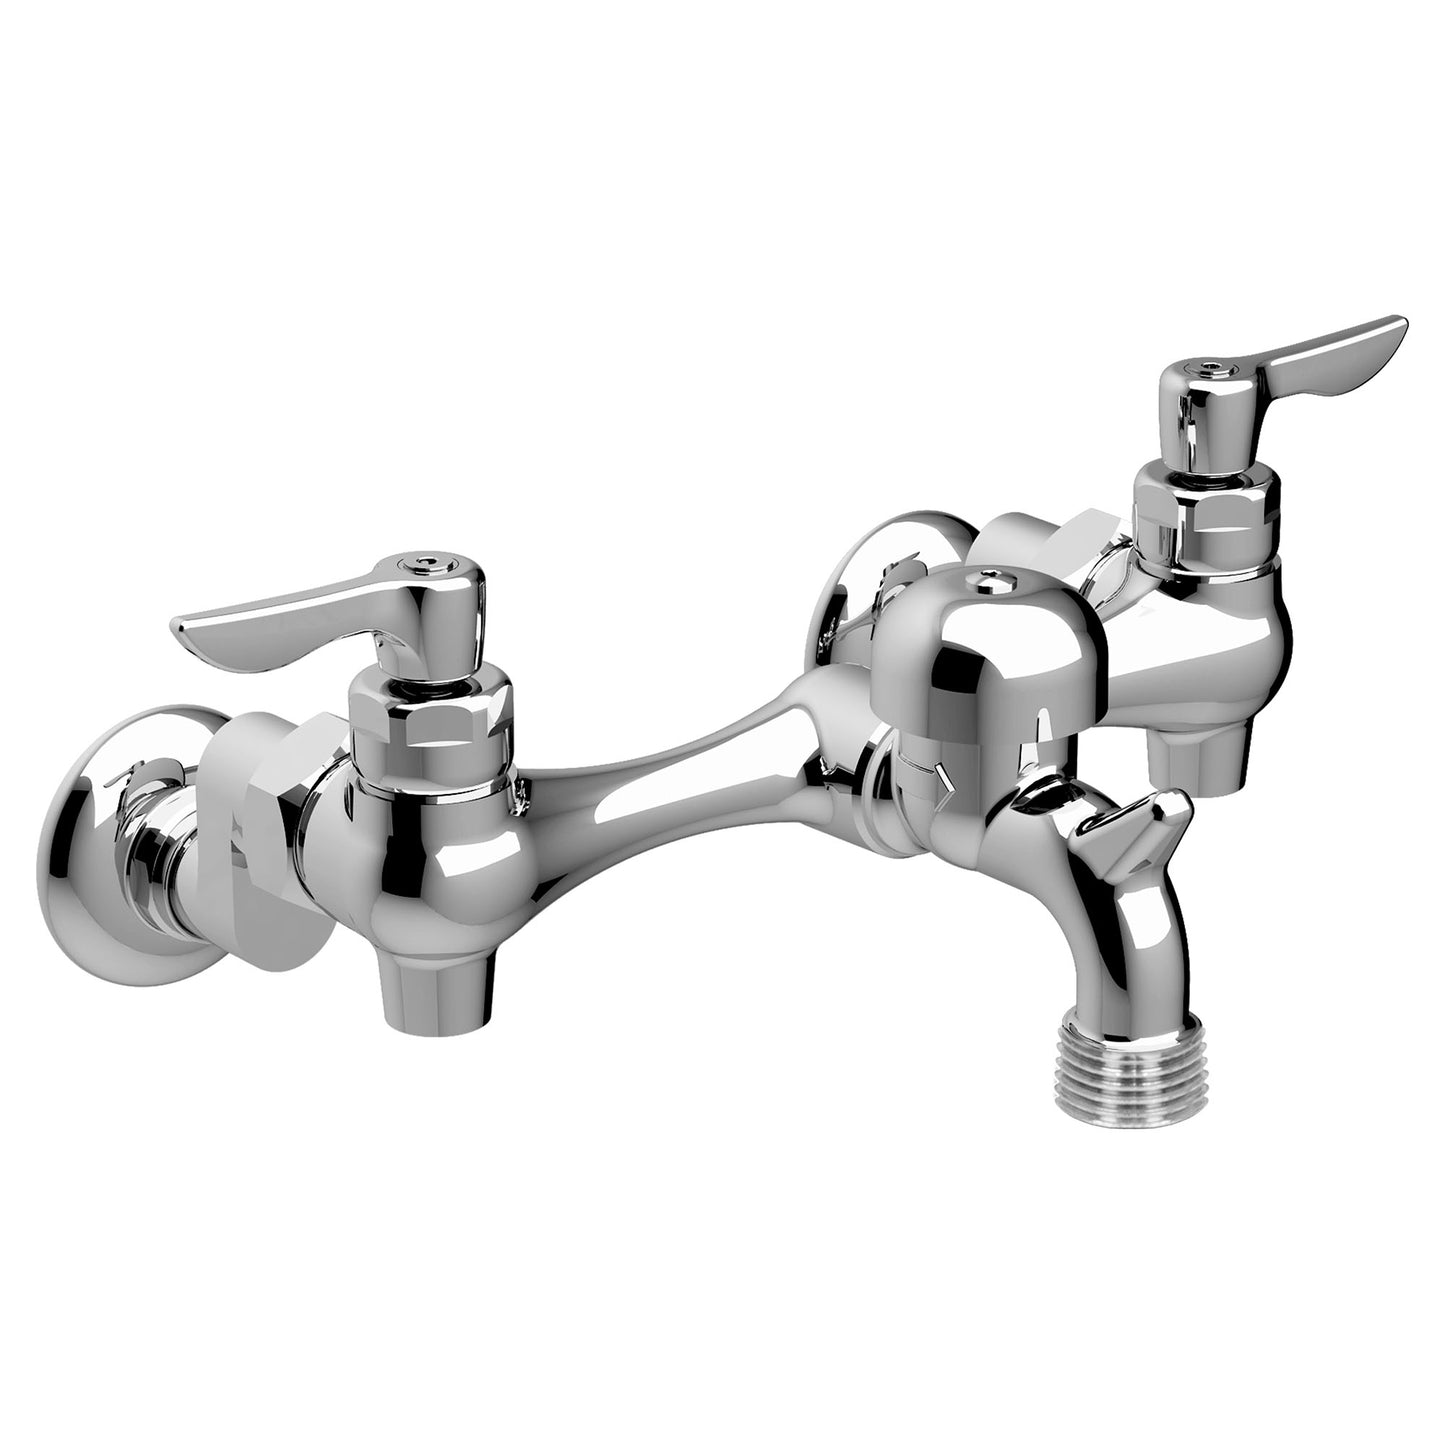 8351076.004 - Wall Mount Service Sink Faucet - 3" VB Spout - Rough Chrome